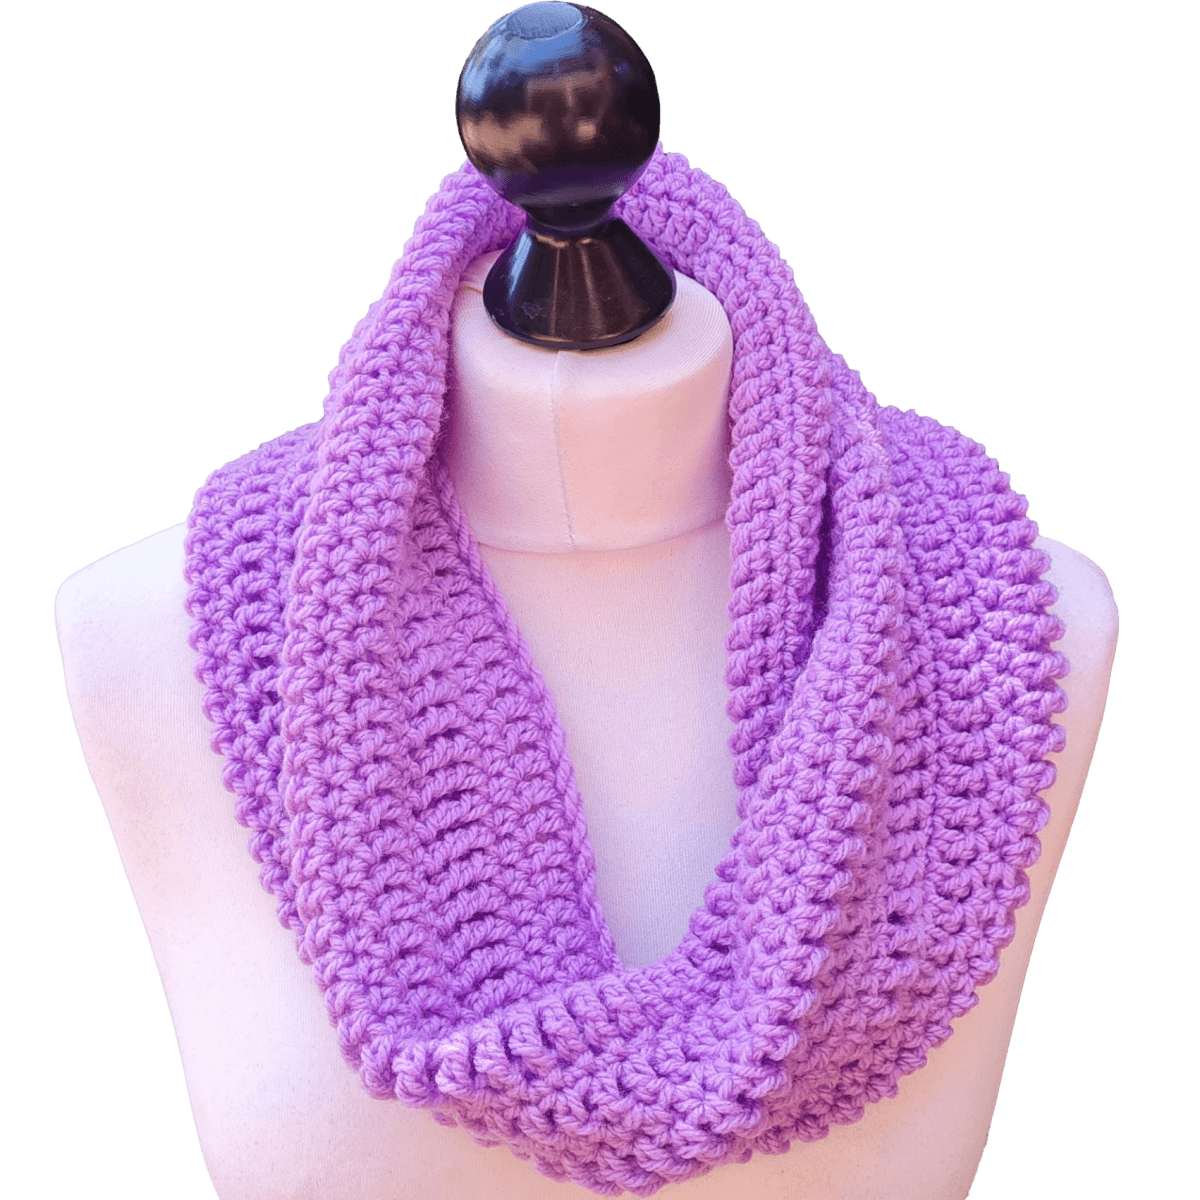 Easy Stitch Sampler Cowl - Easy to Follow Written Crochet Pattern - The Secret Yarnery